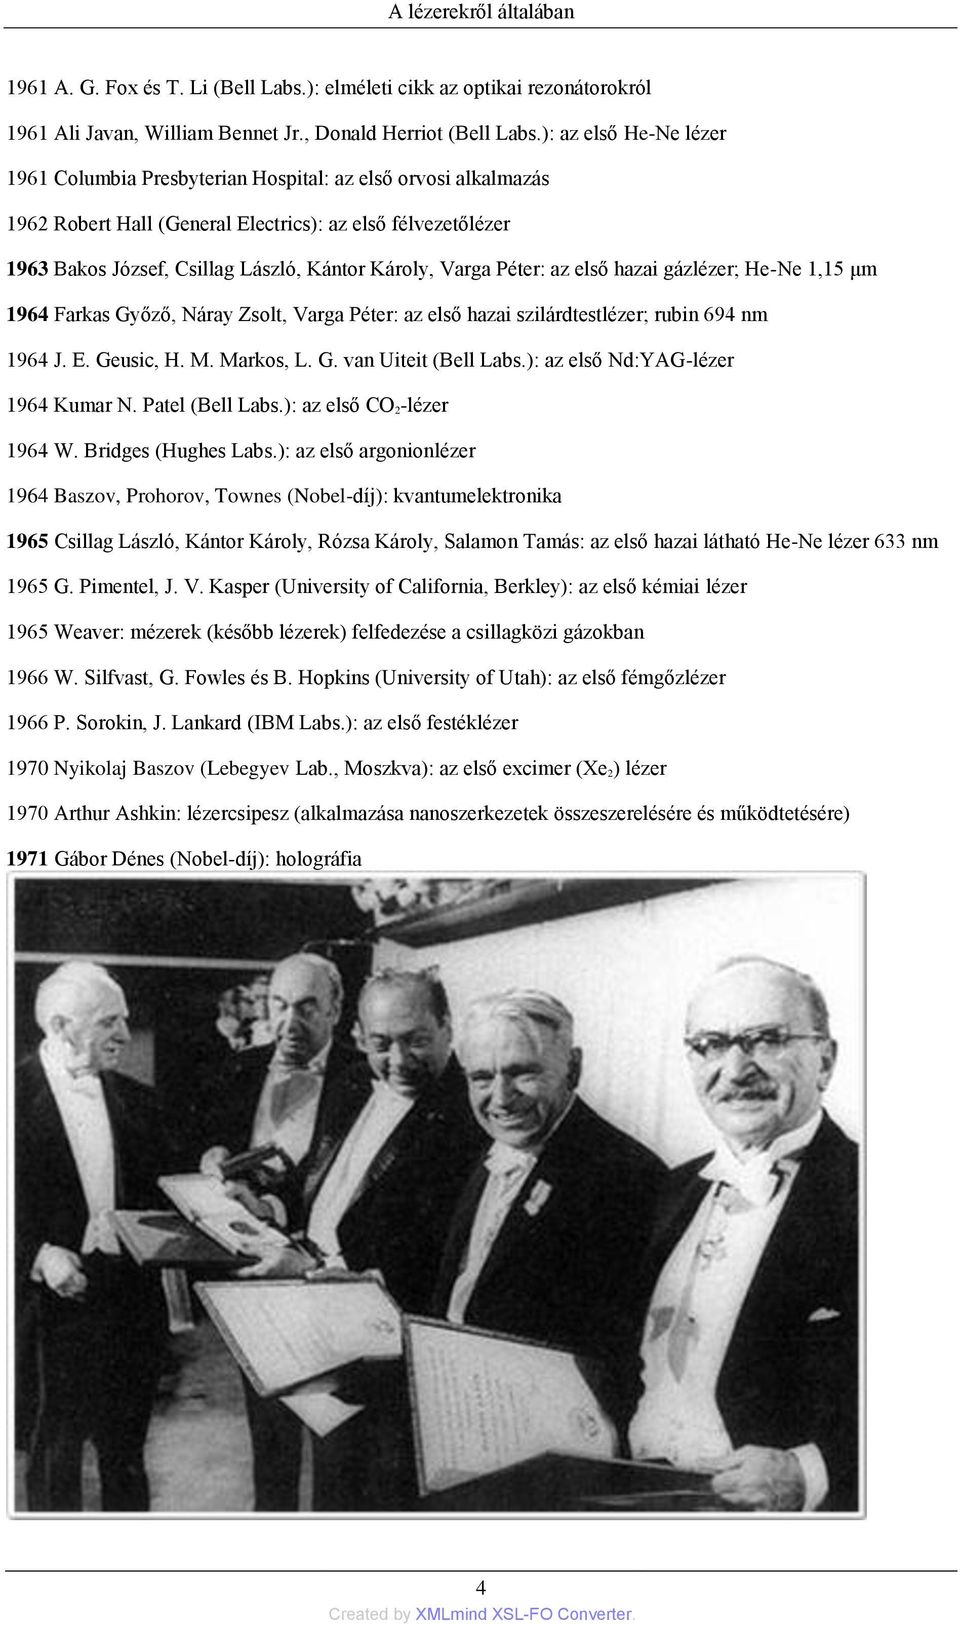 Varga Péter: az első hazai gázlézer; He-Ne 1,15 μm 1964 Farkas Győző, Náray Zsolt, Varga Péter: az első hazai szilárdtestlézer; rubin 694 nm 1964 J. E. Geusic, H. M. Markos, L. G. van Uiteit (Bell Labs.